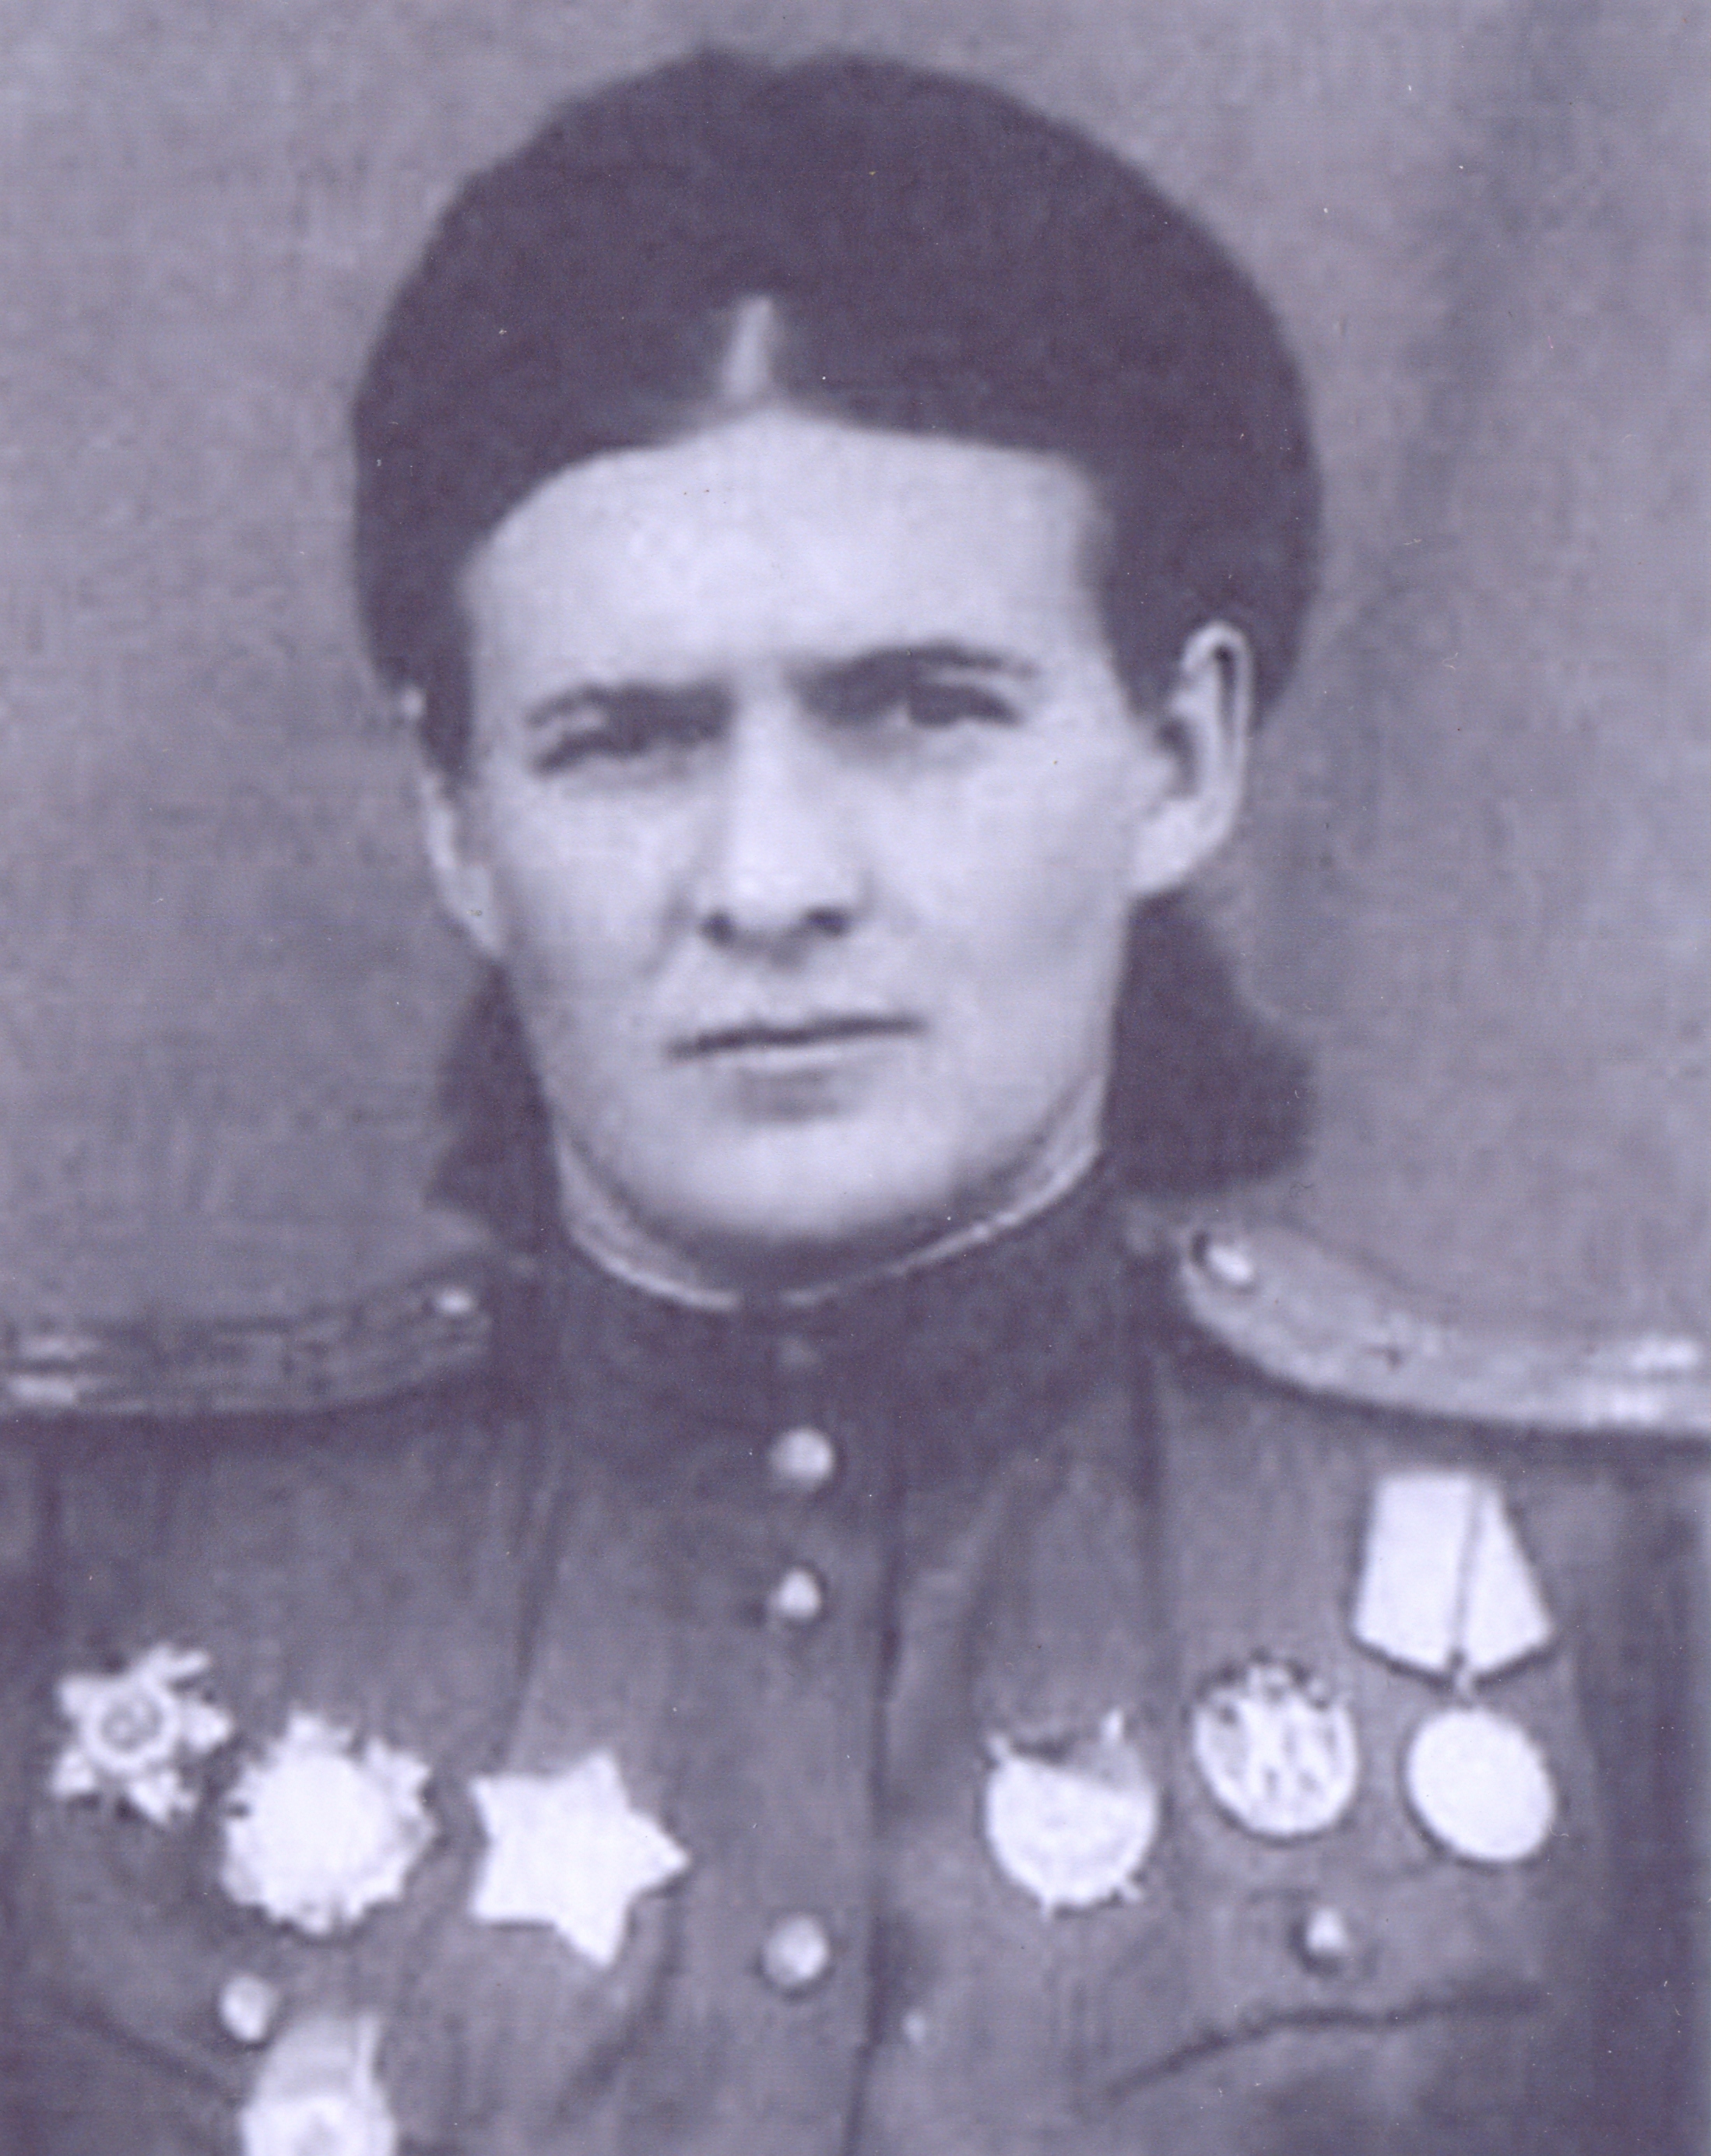 Евдокия Давыдовна Бочарова